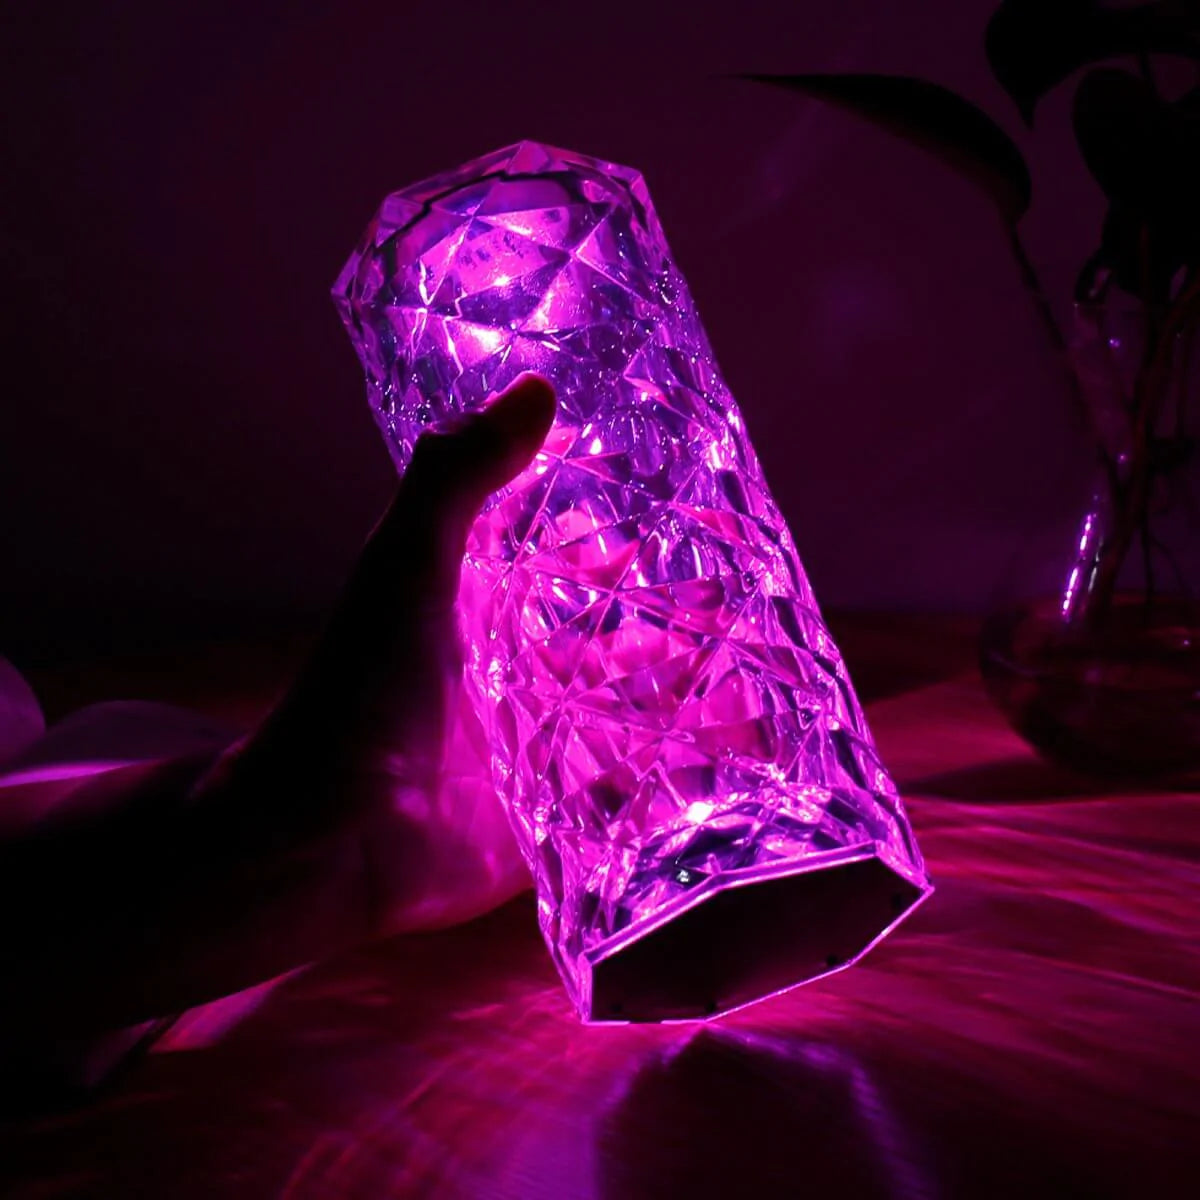 Crystal Diamond LED Lamp Blackbrdstore